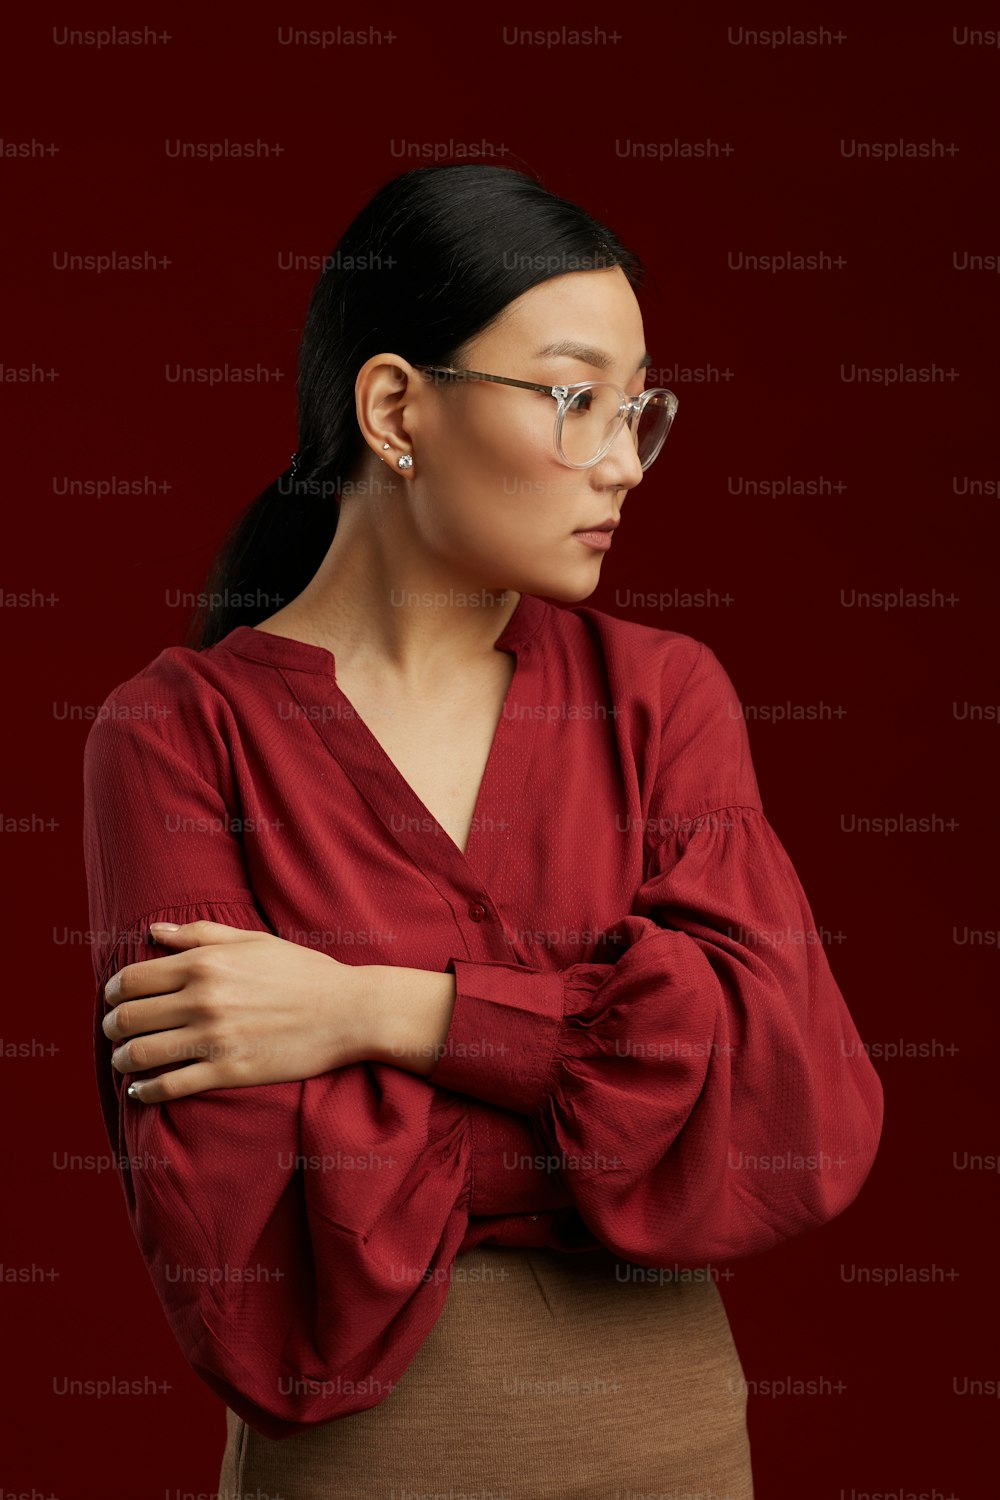 Retrato de cintura para arriba de una mujer asiática con blusa roja posando rígidamente contra el fondo granate en el estudio